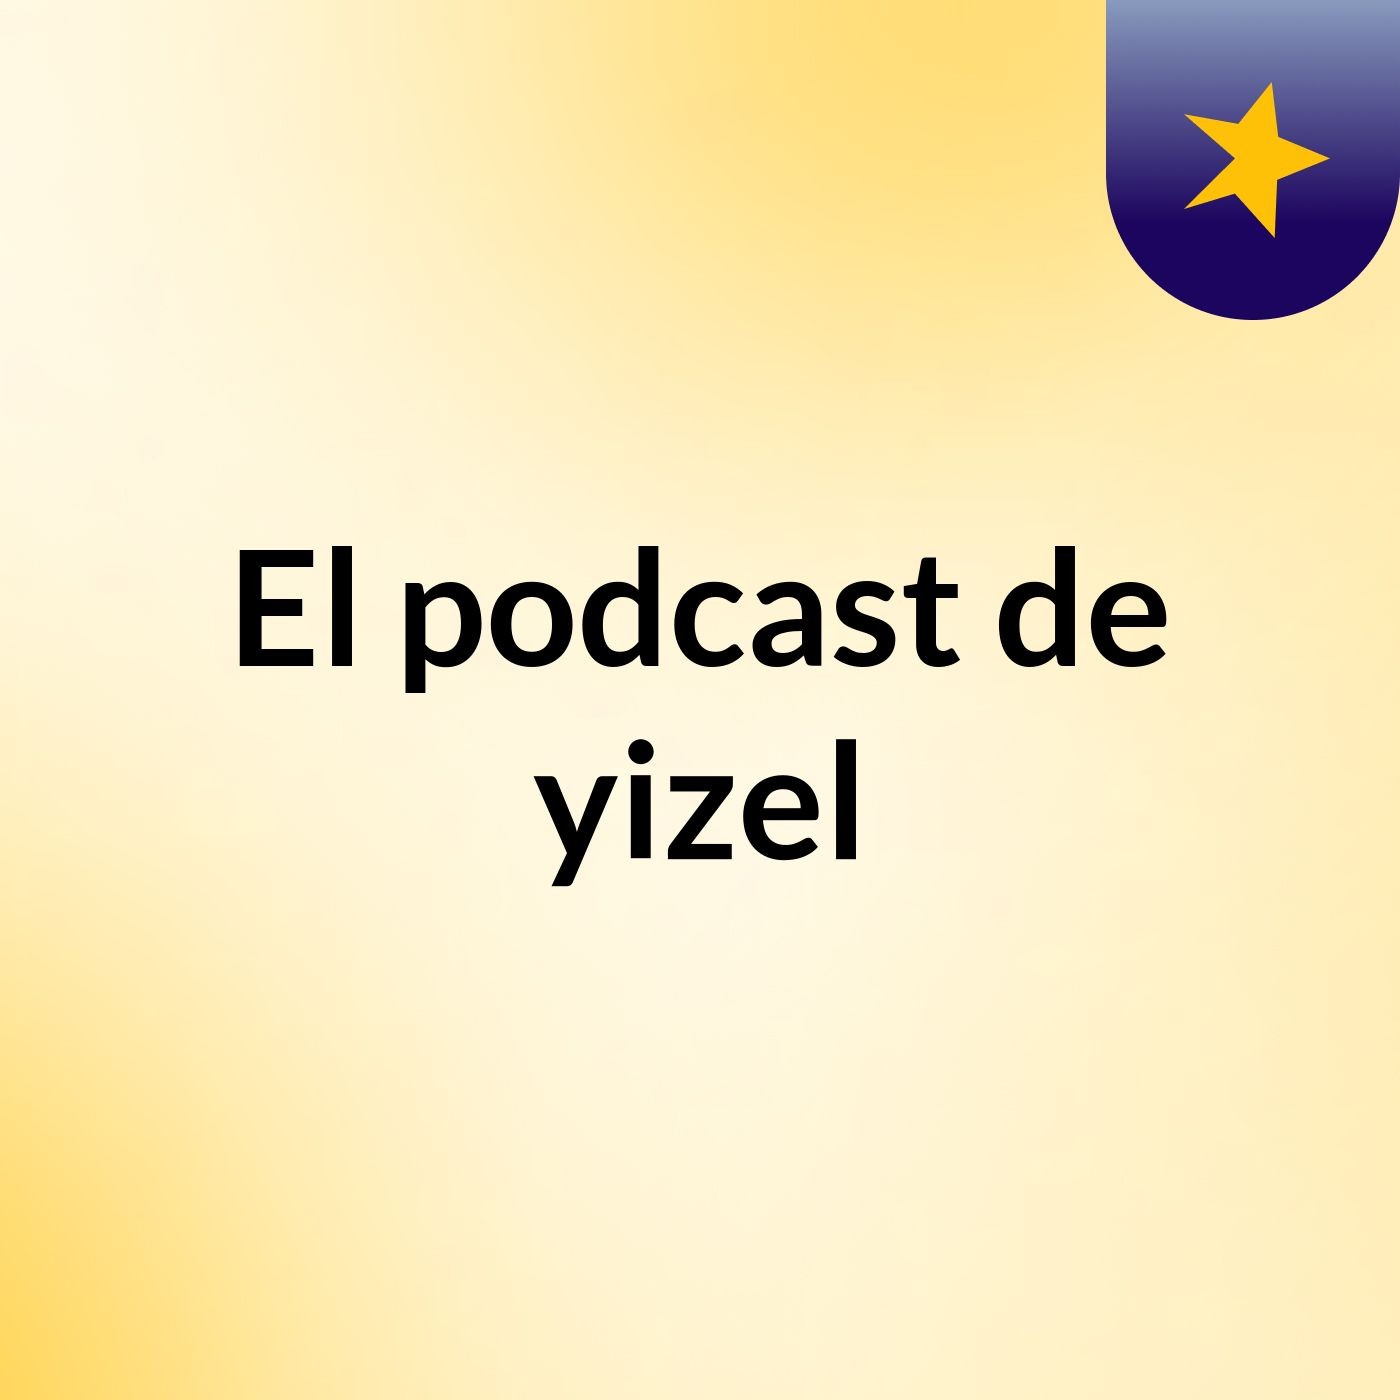 El podcast de yizel